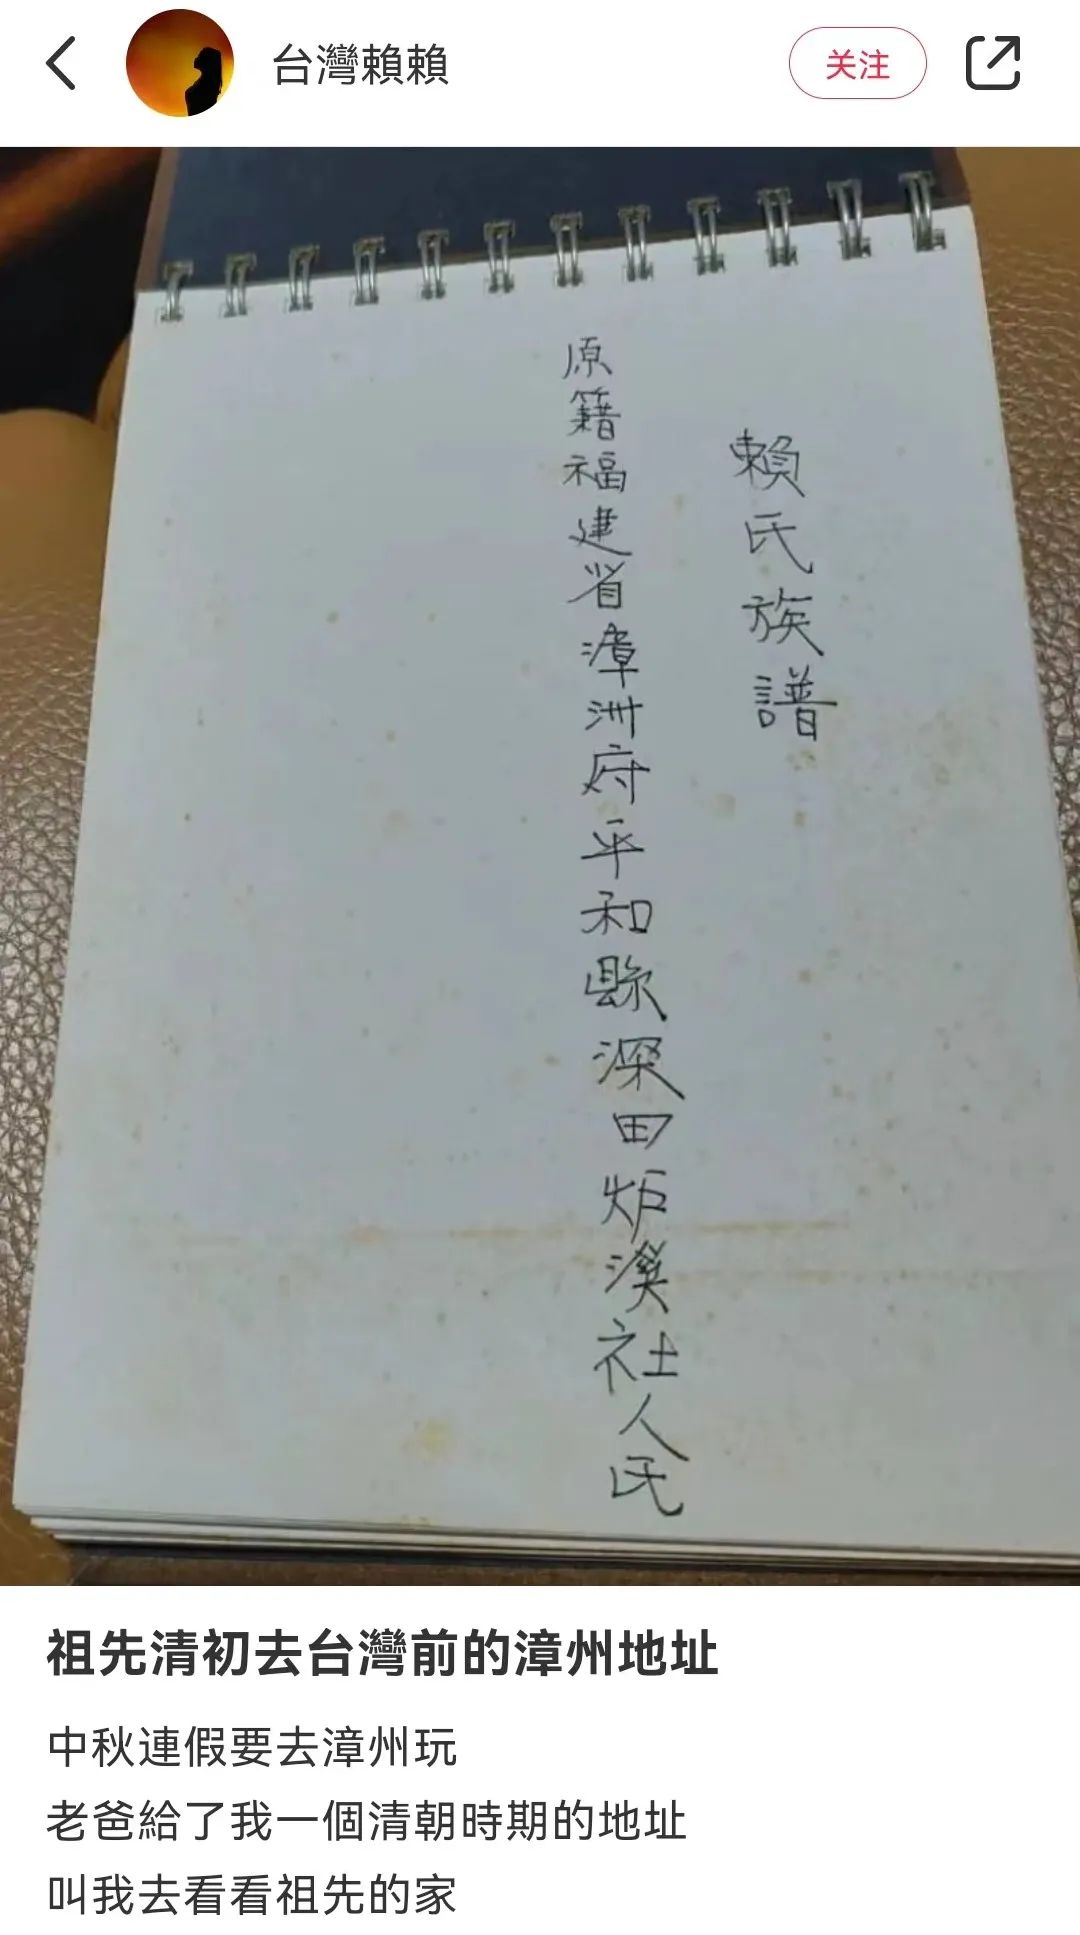 台湾女孩凭“清朝地址”找到祖先家乡